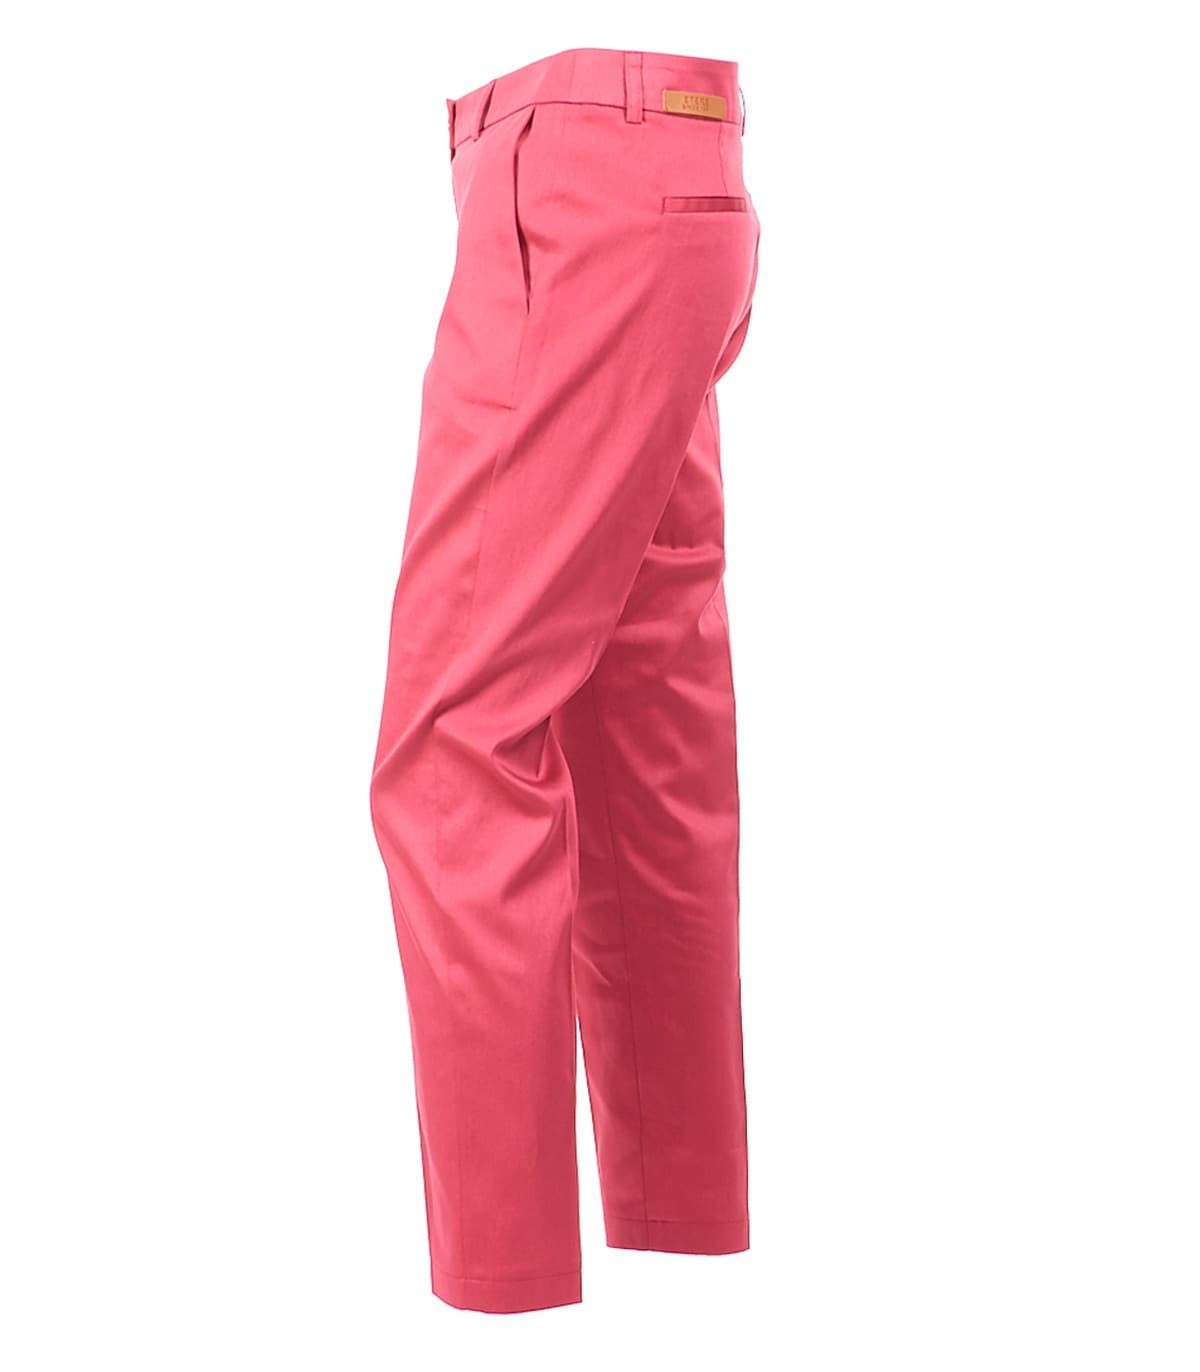 памучен панталон в цвят корал NIKO11